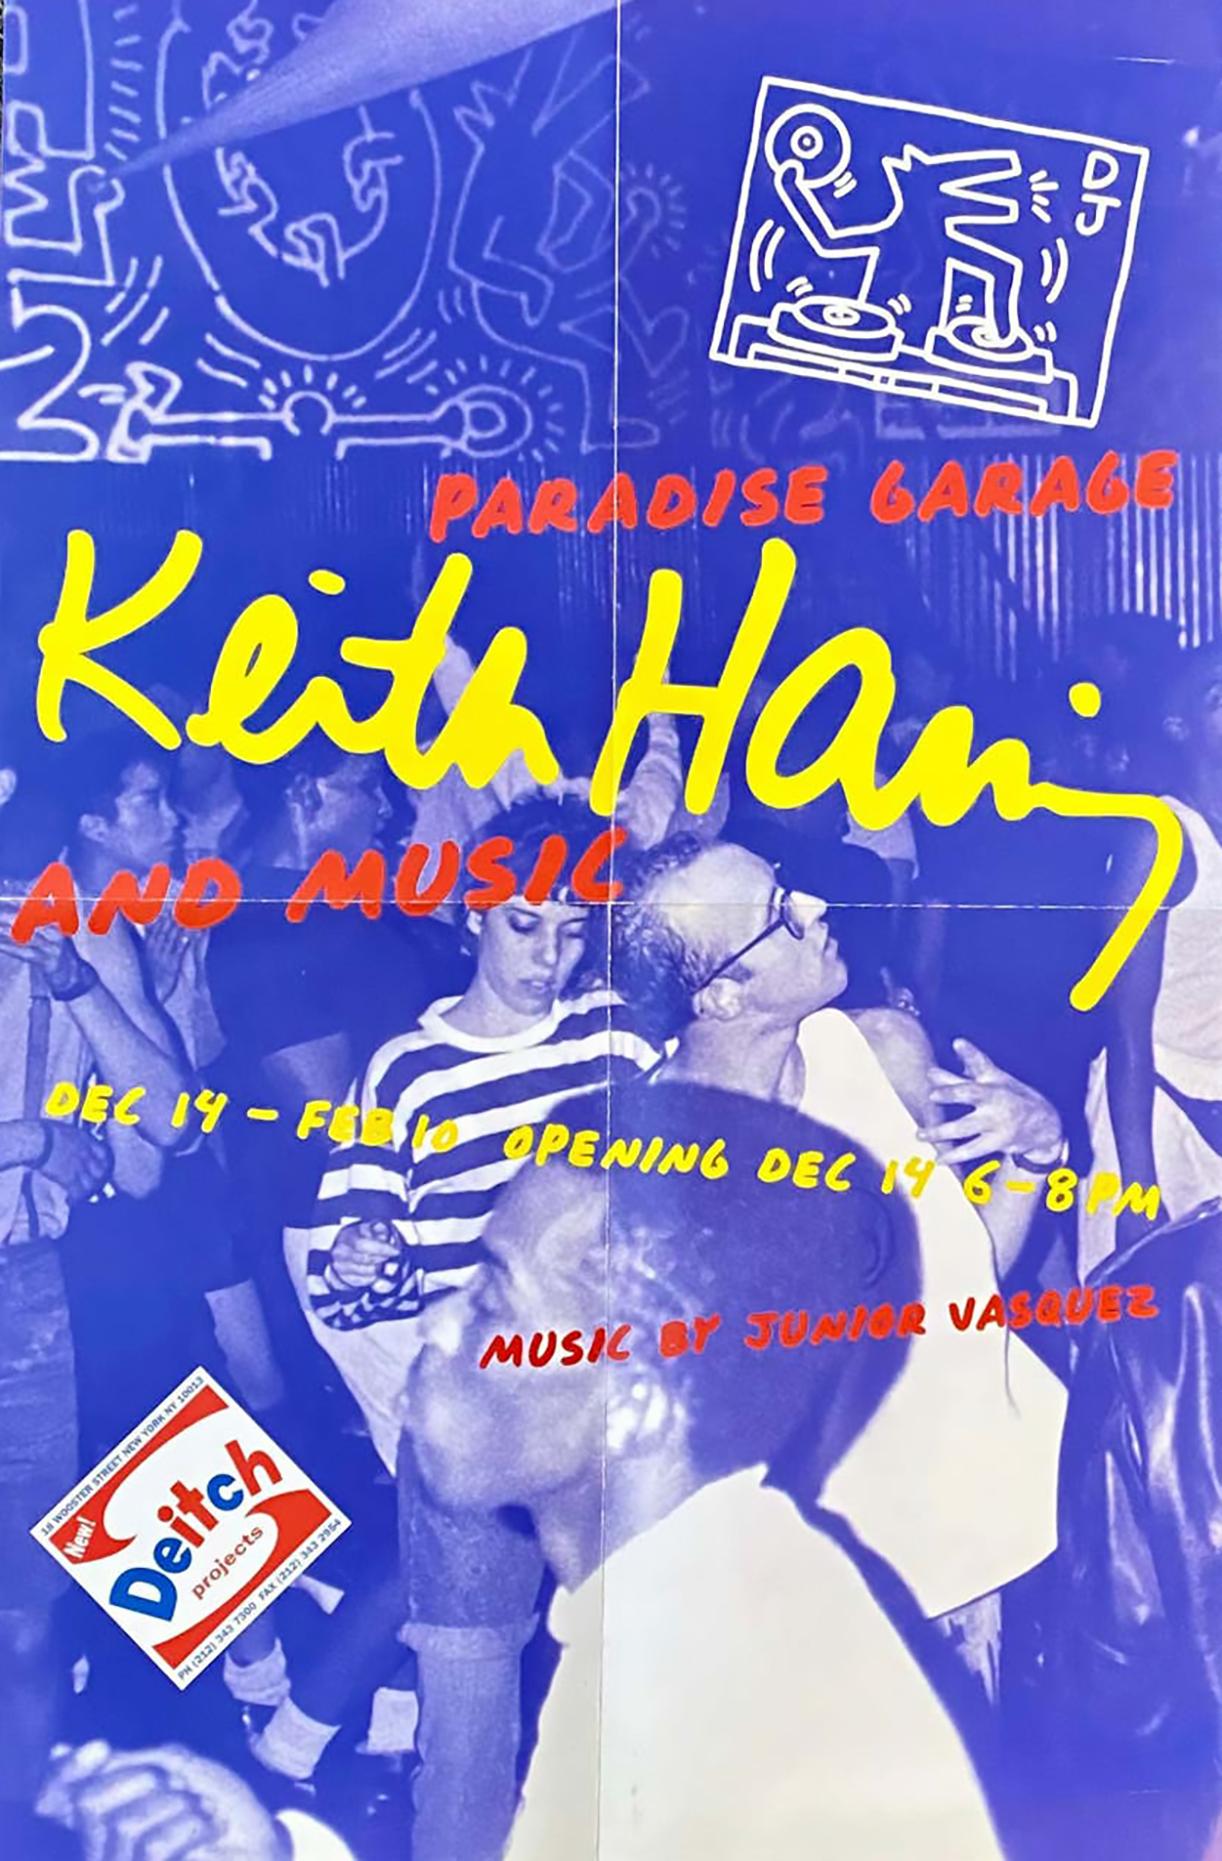 Rare affiche d'exposition vintage de Keith Haring publiée à l'occasion de :

Paradise Garage : Keith Haring et la musique,
14 décembre 2000-10 février 2001, Deitch Projects, 18 Wooster Street, New York, NY'.

Lithographie offset ; dimensions : 11 x